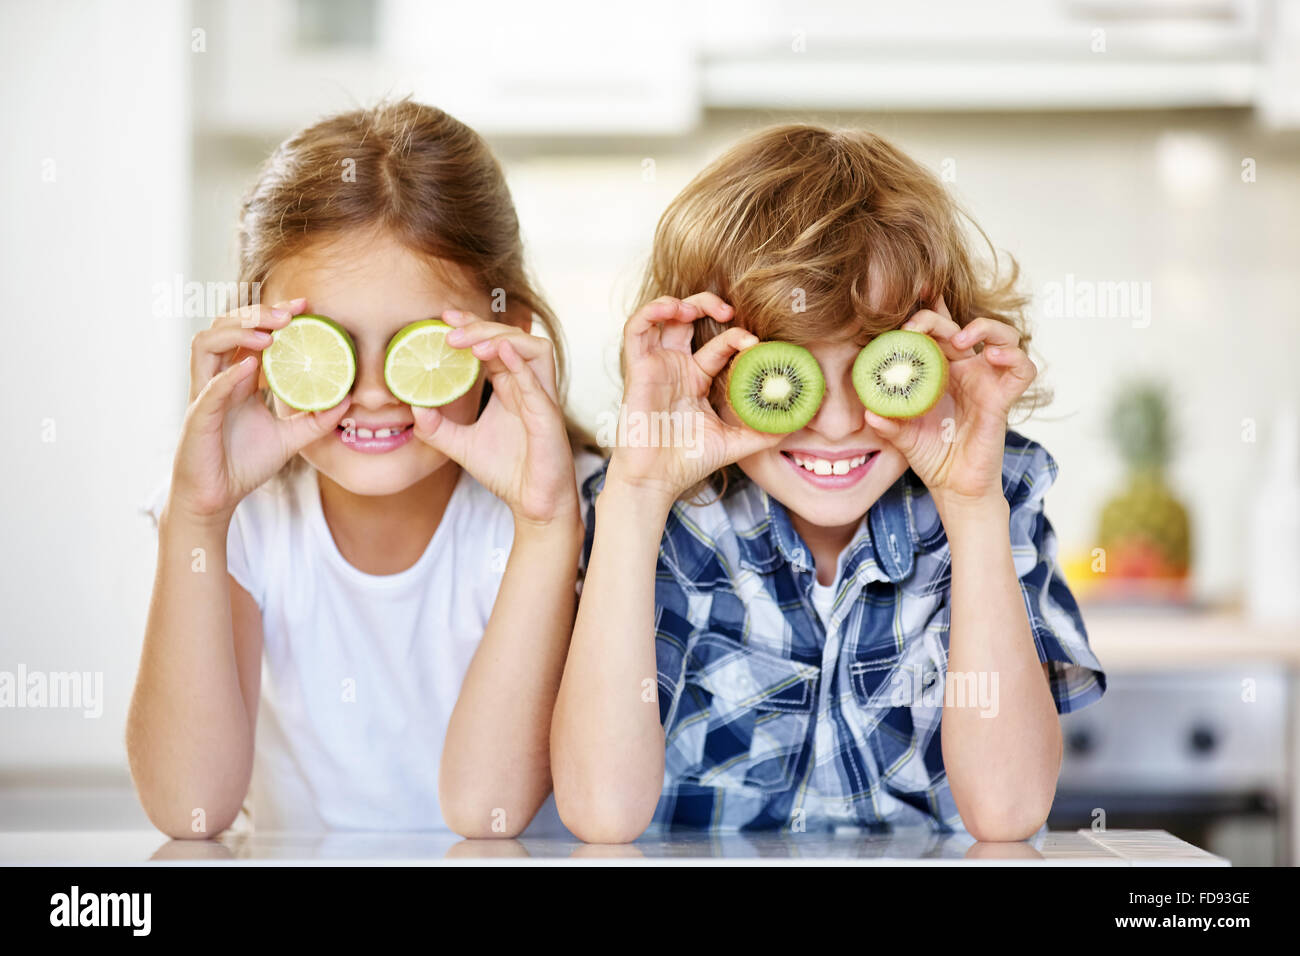 Zwei Kinder in der Küche versteckt ihre Augen hinter Früchte Stockfoto